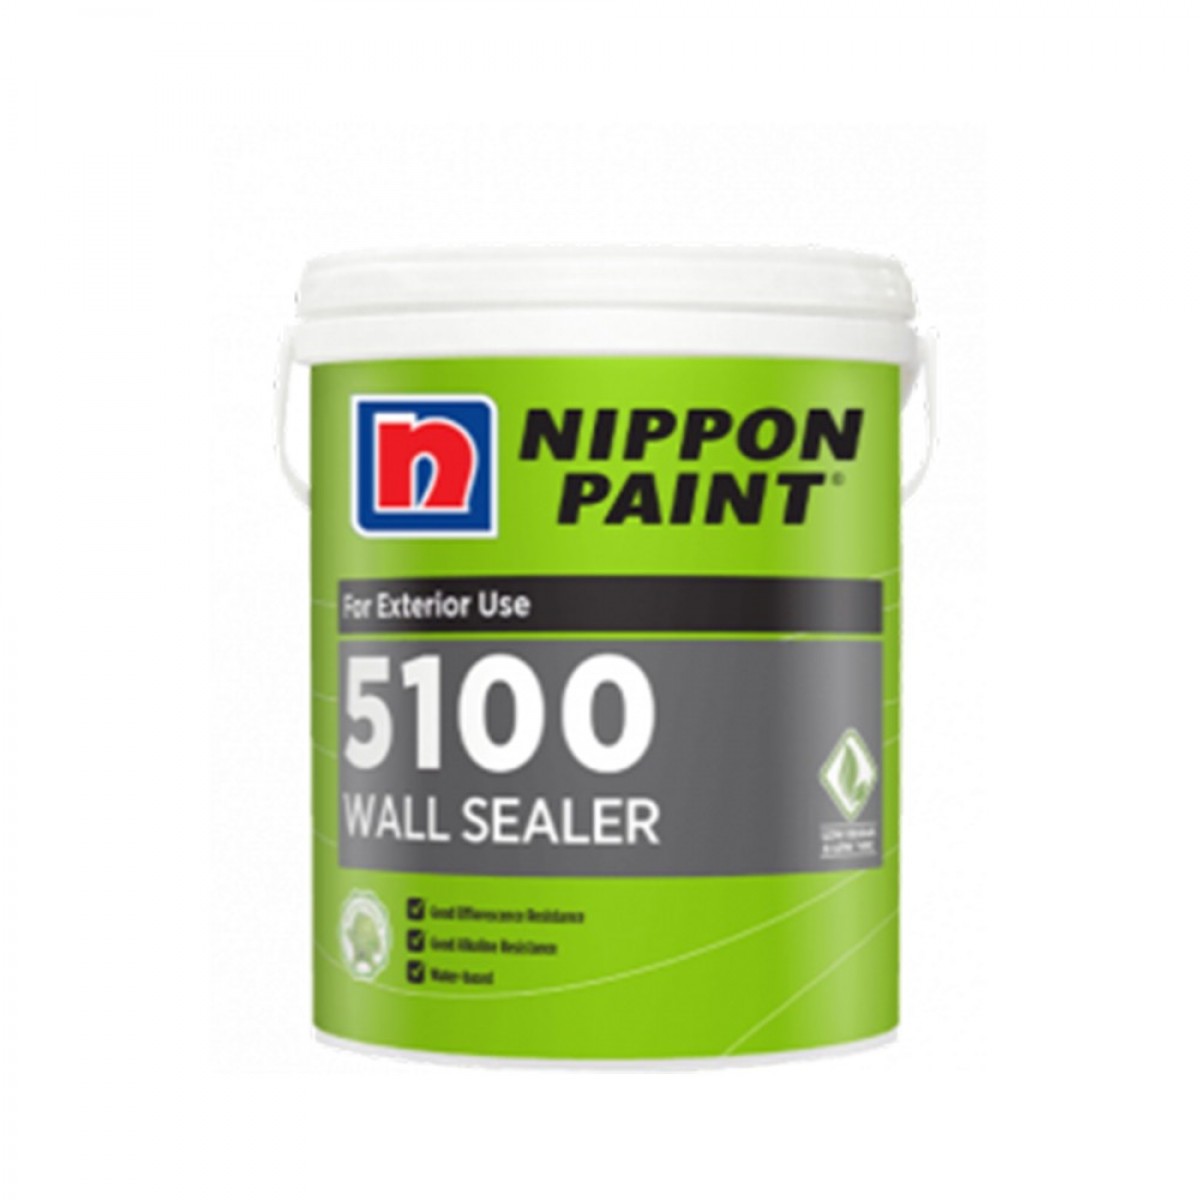 Nippon Paint Vinilex 5100 Wall Sealer 18L